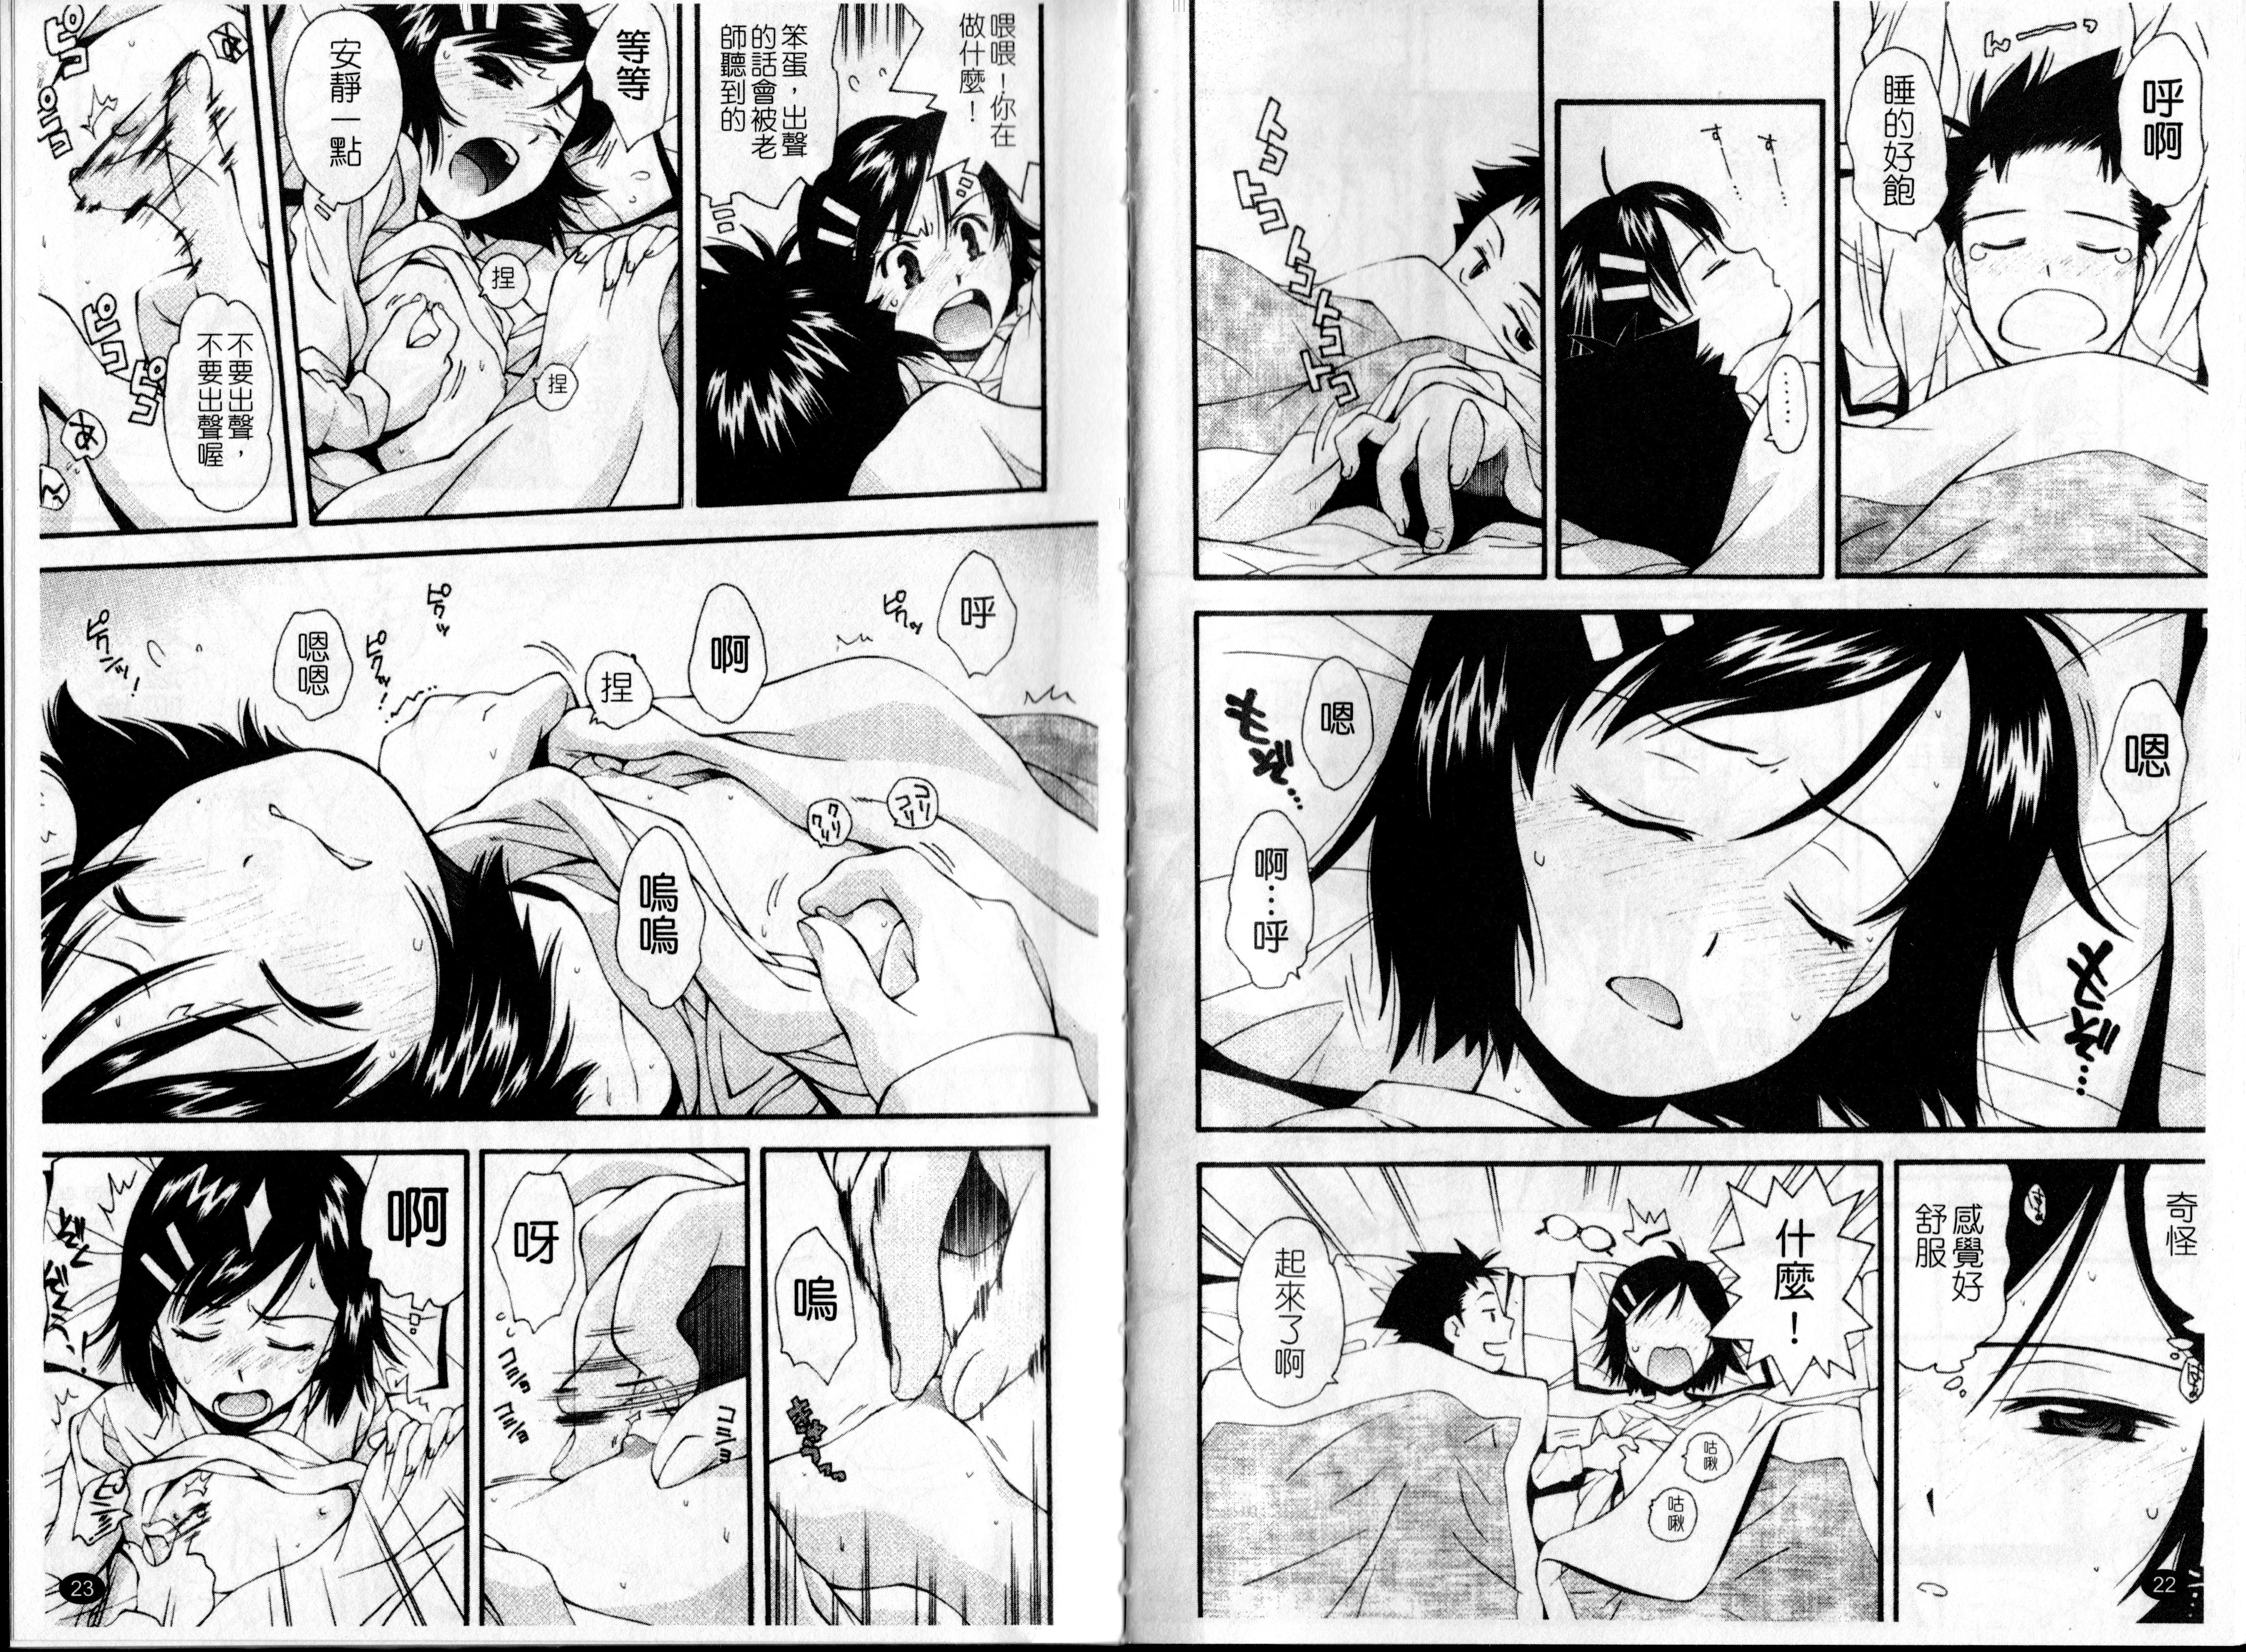 Urayama no Himitsu Kichi Page 12 Of 102 hentai comic, Urayama no Himitsu Ki...